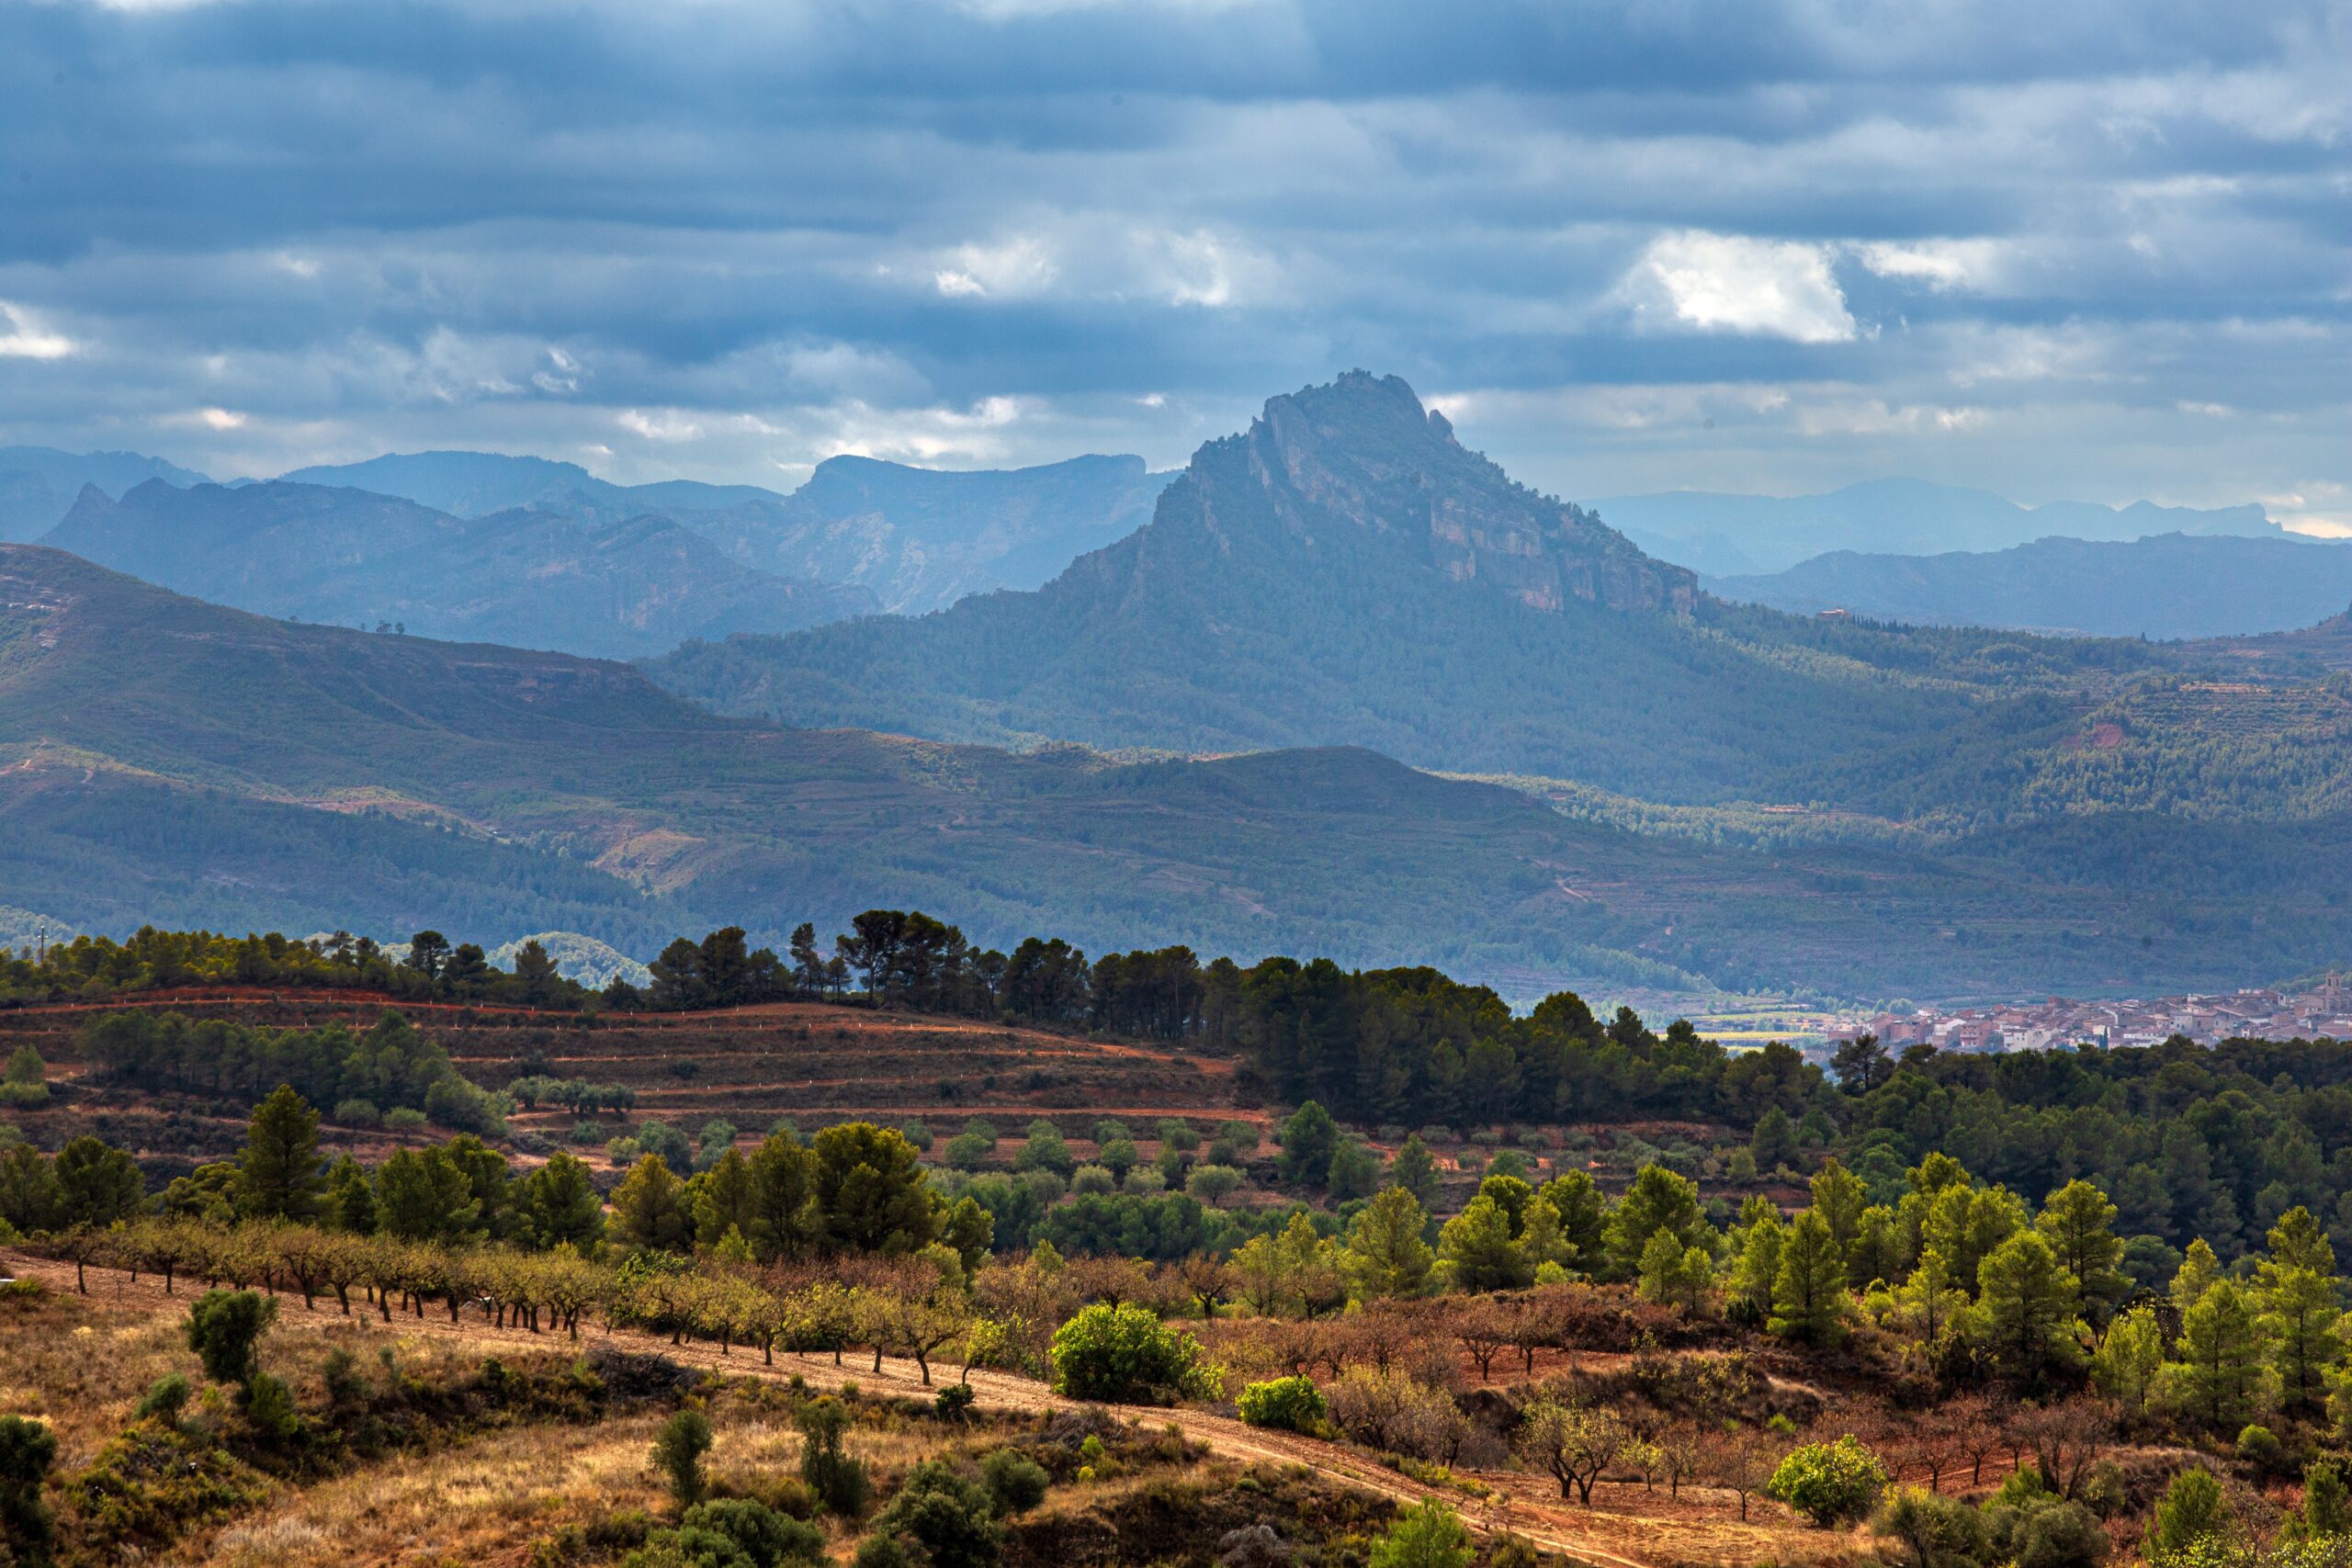 Berge in Spanien